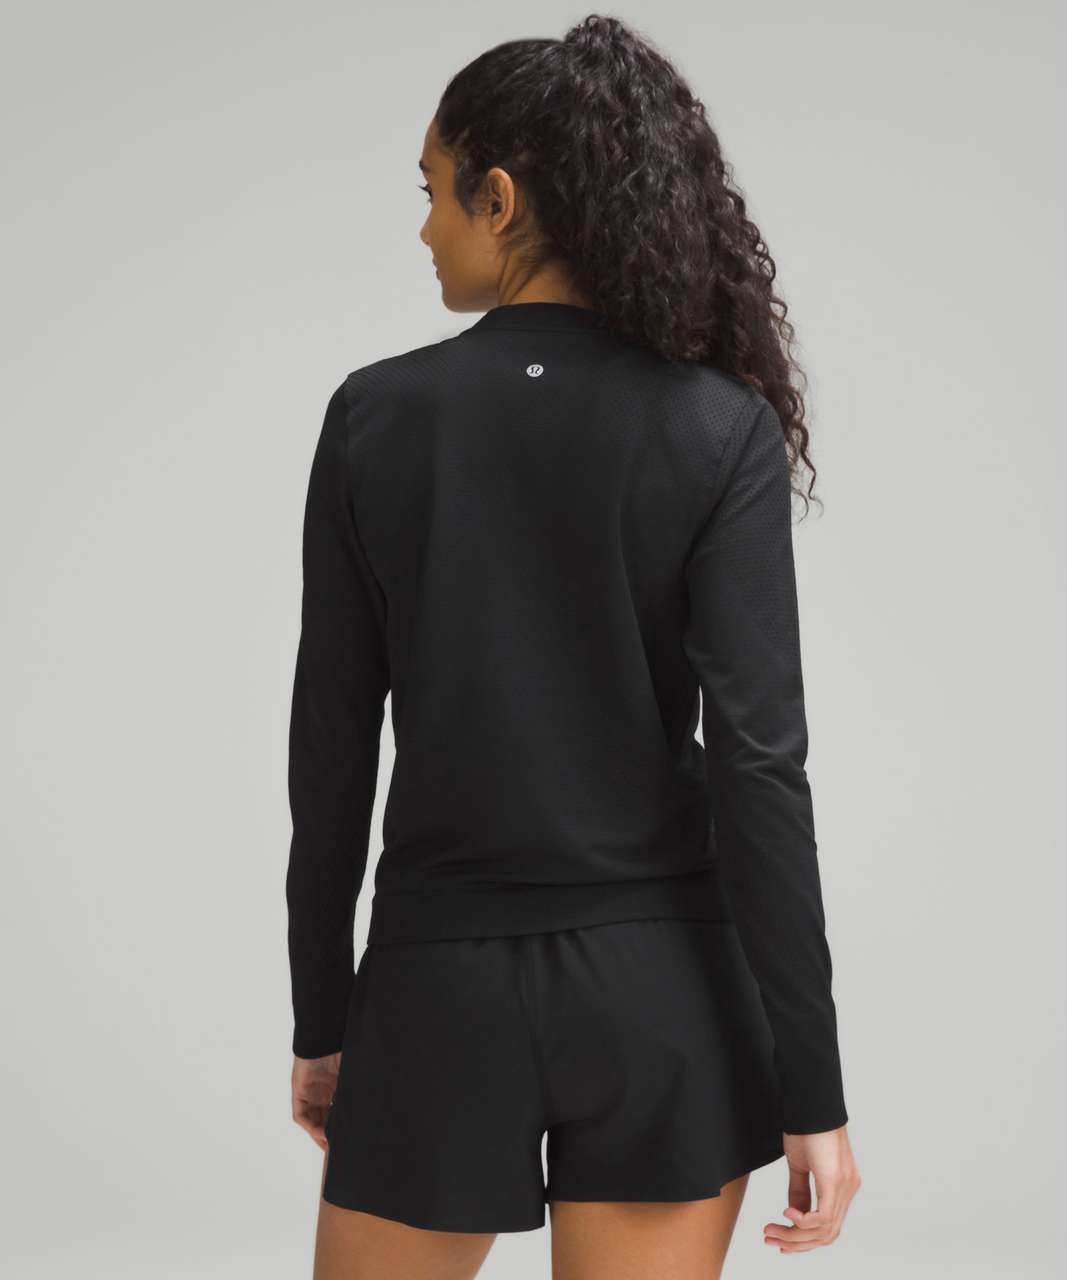 lululemon athletica Ellie Long Sleeve Sports Top in Black